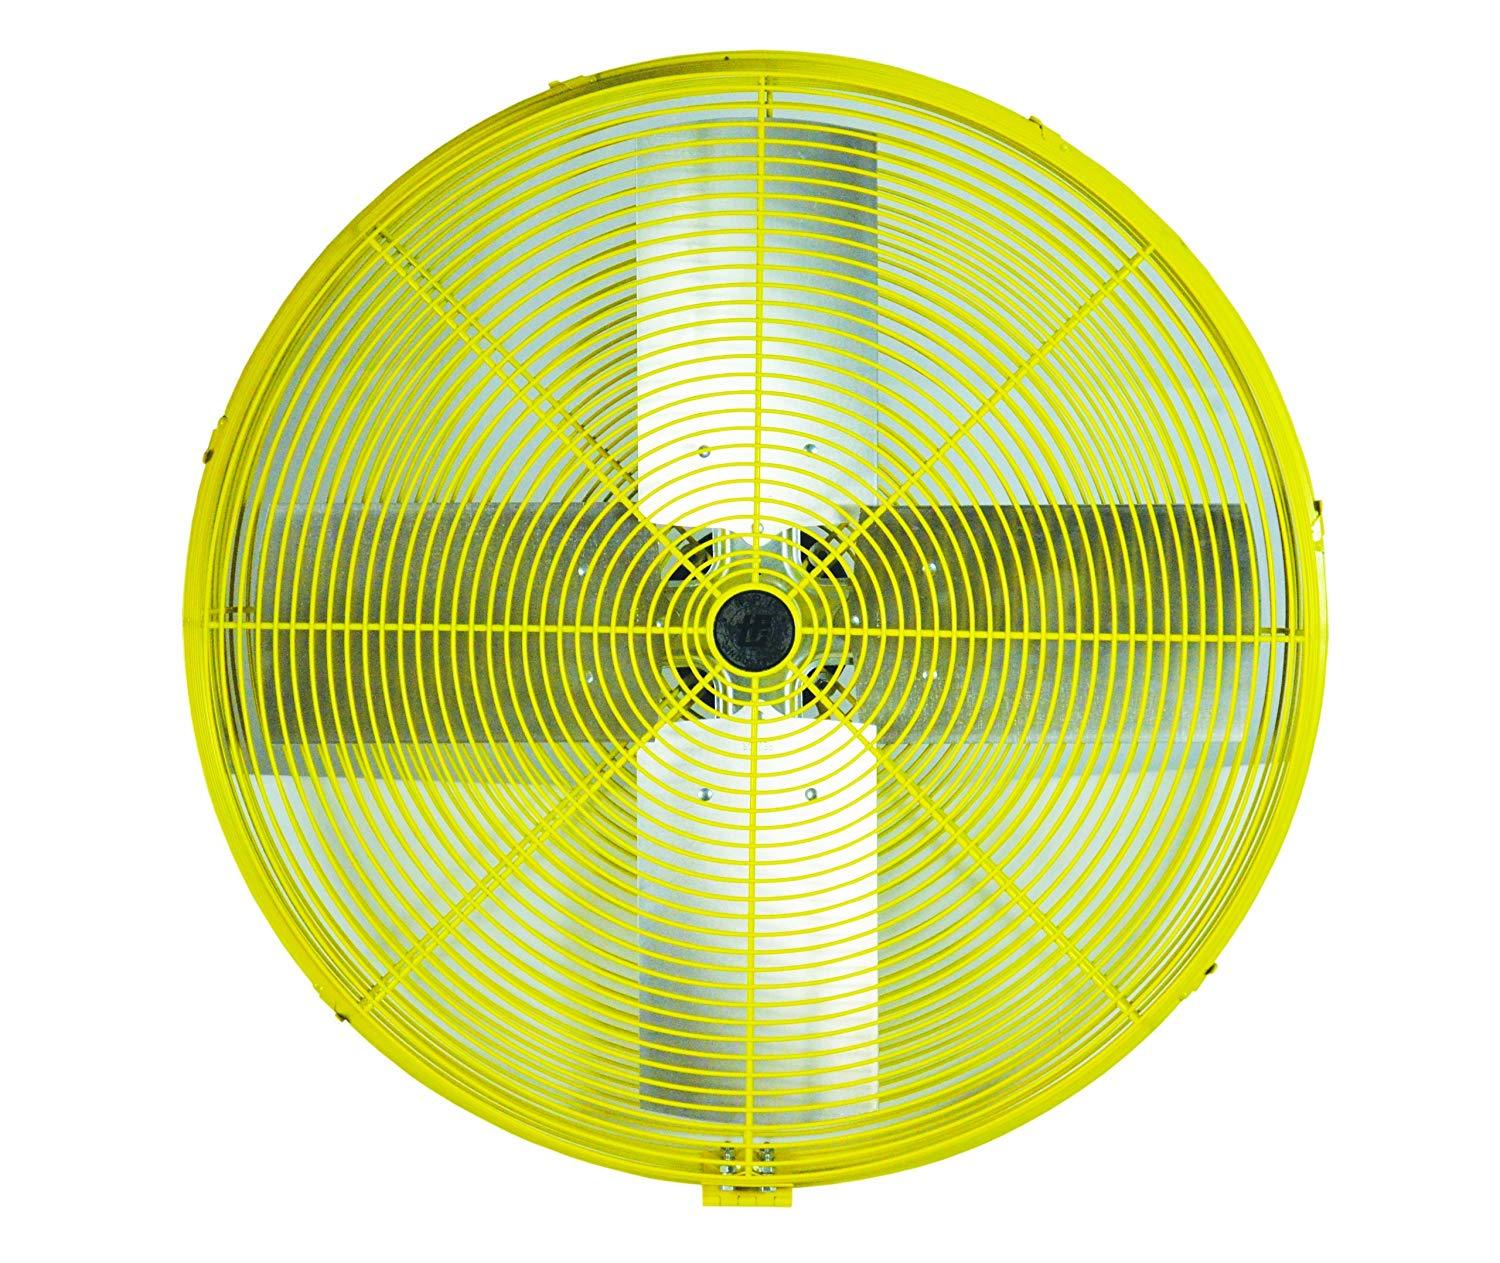 TPI 24" Industrial Assembled Super Duty Fan (Yellow) - HDH24JR